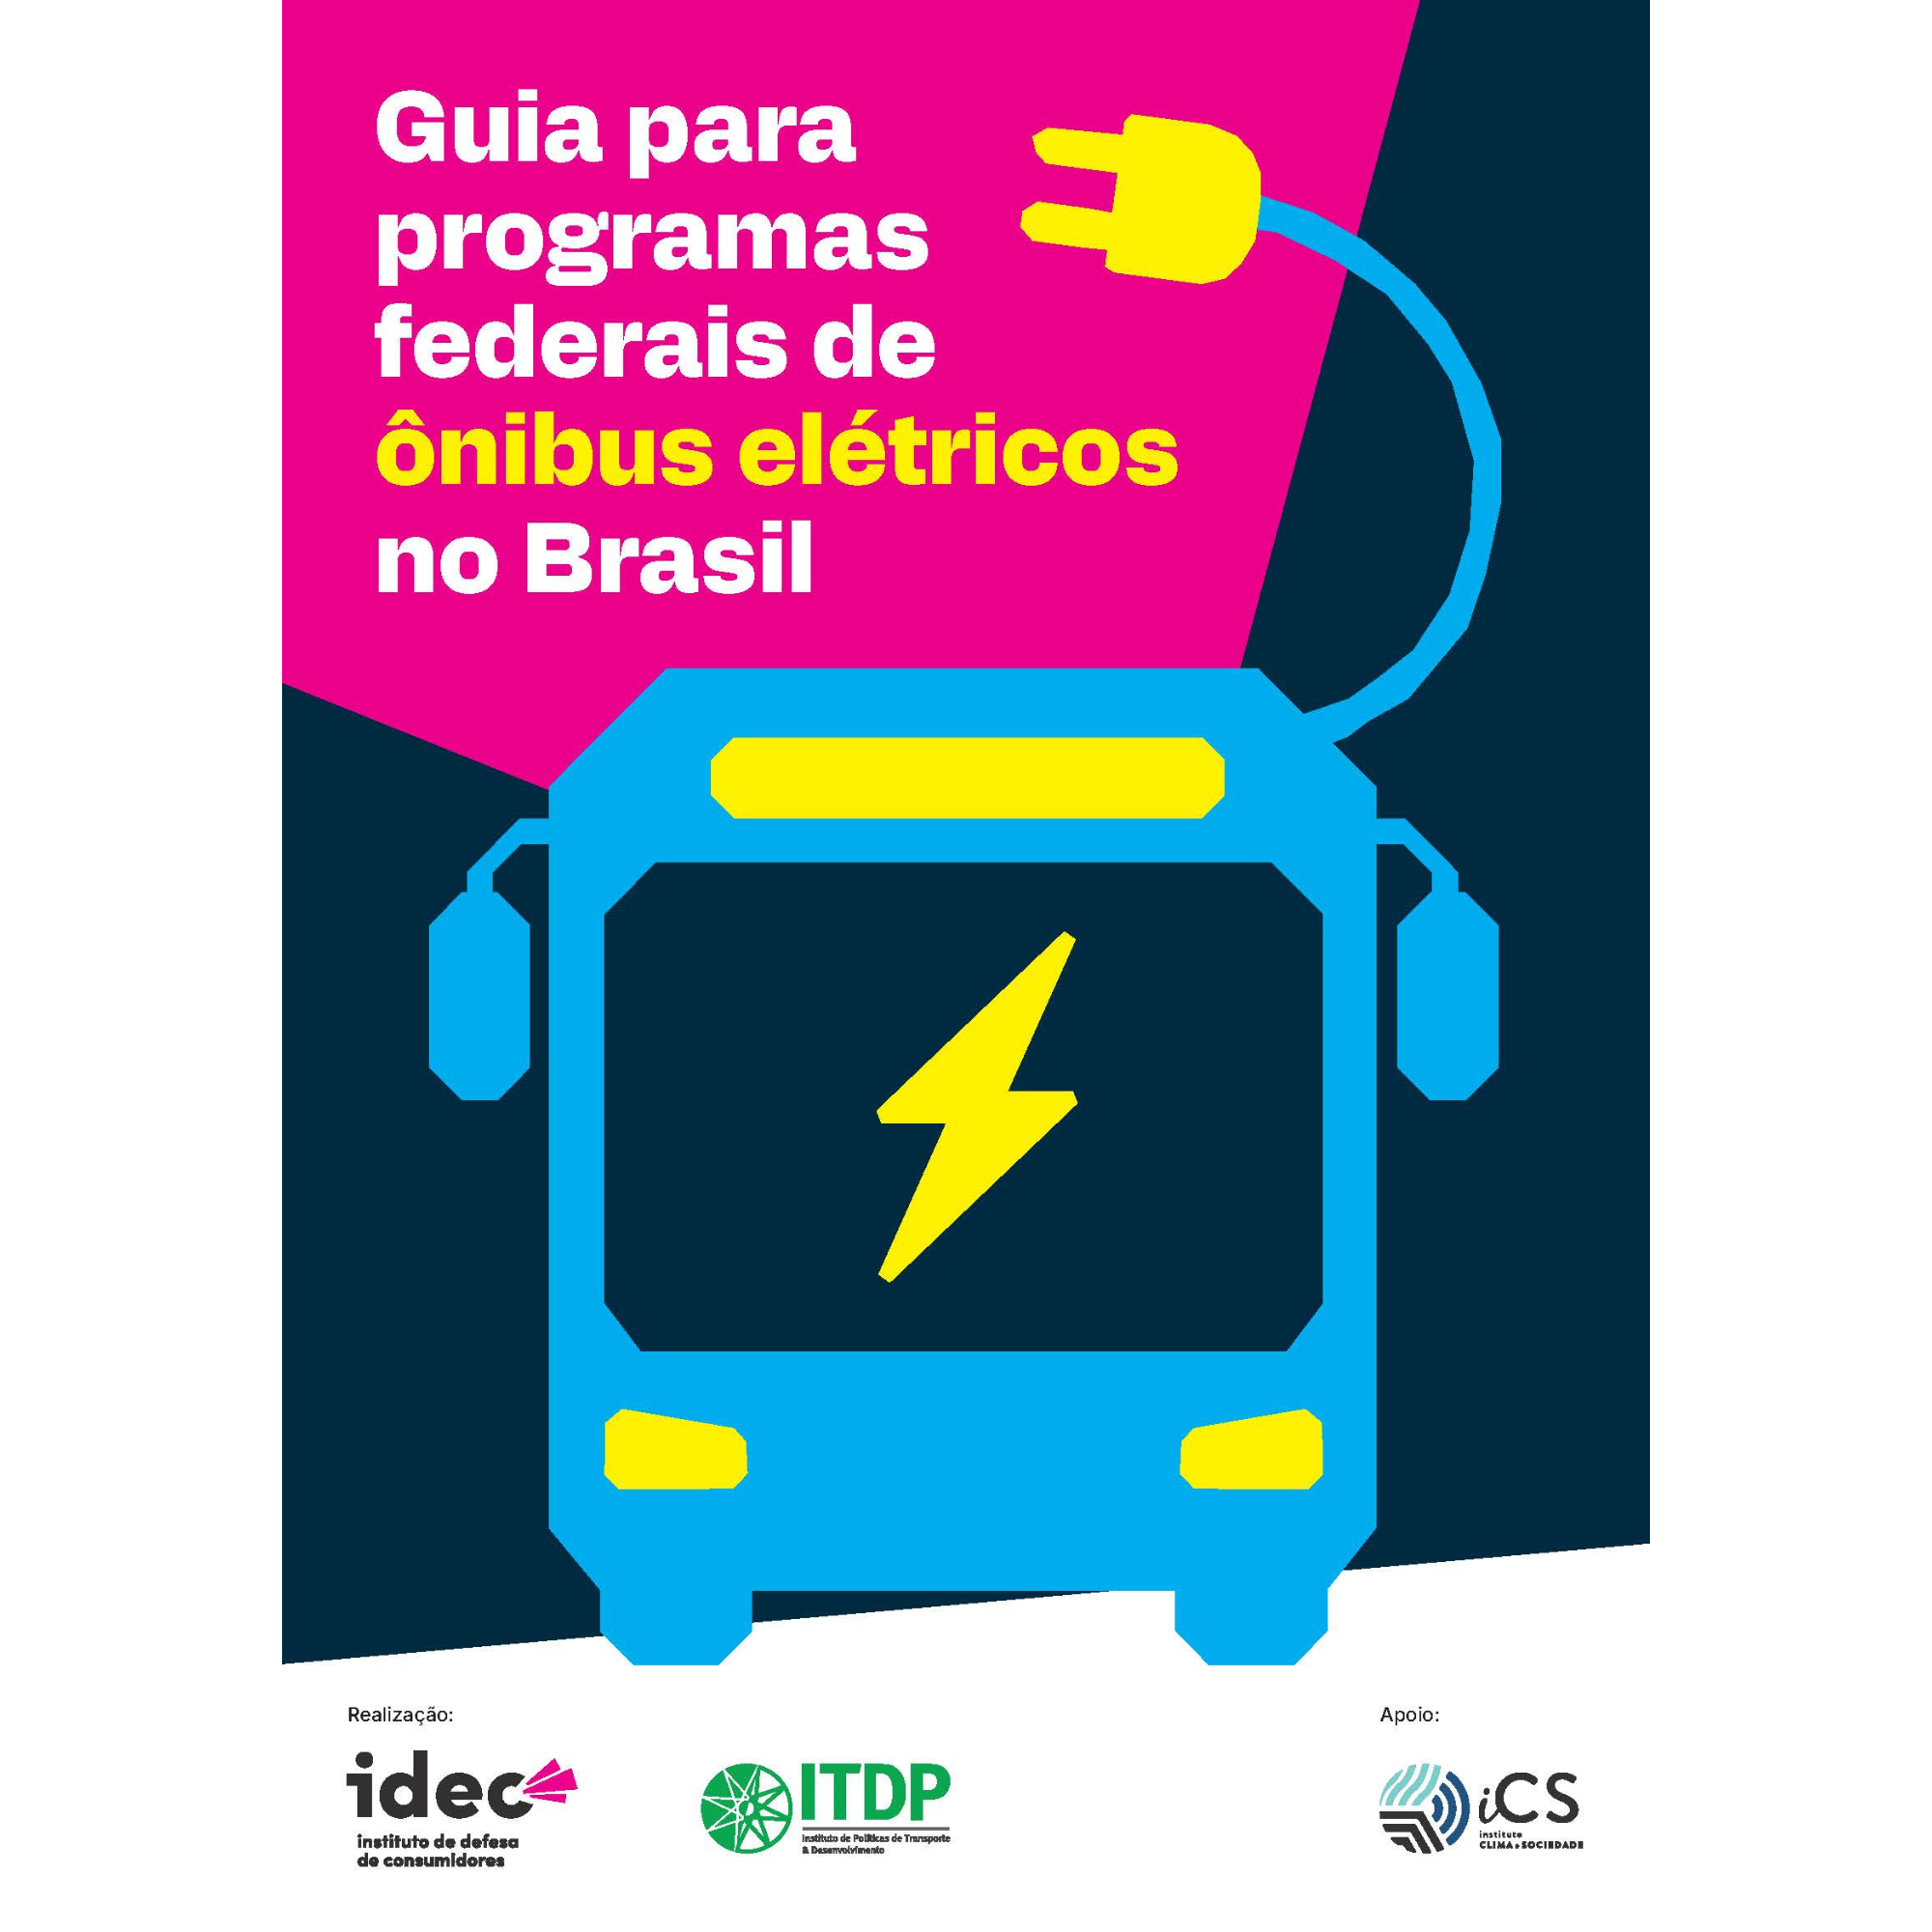 Guia para programas federais de ônibus elétricos no Brasil